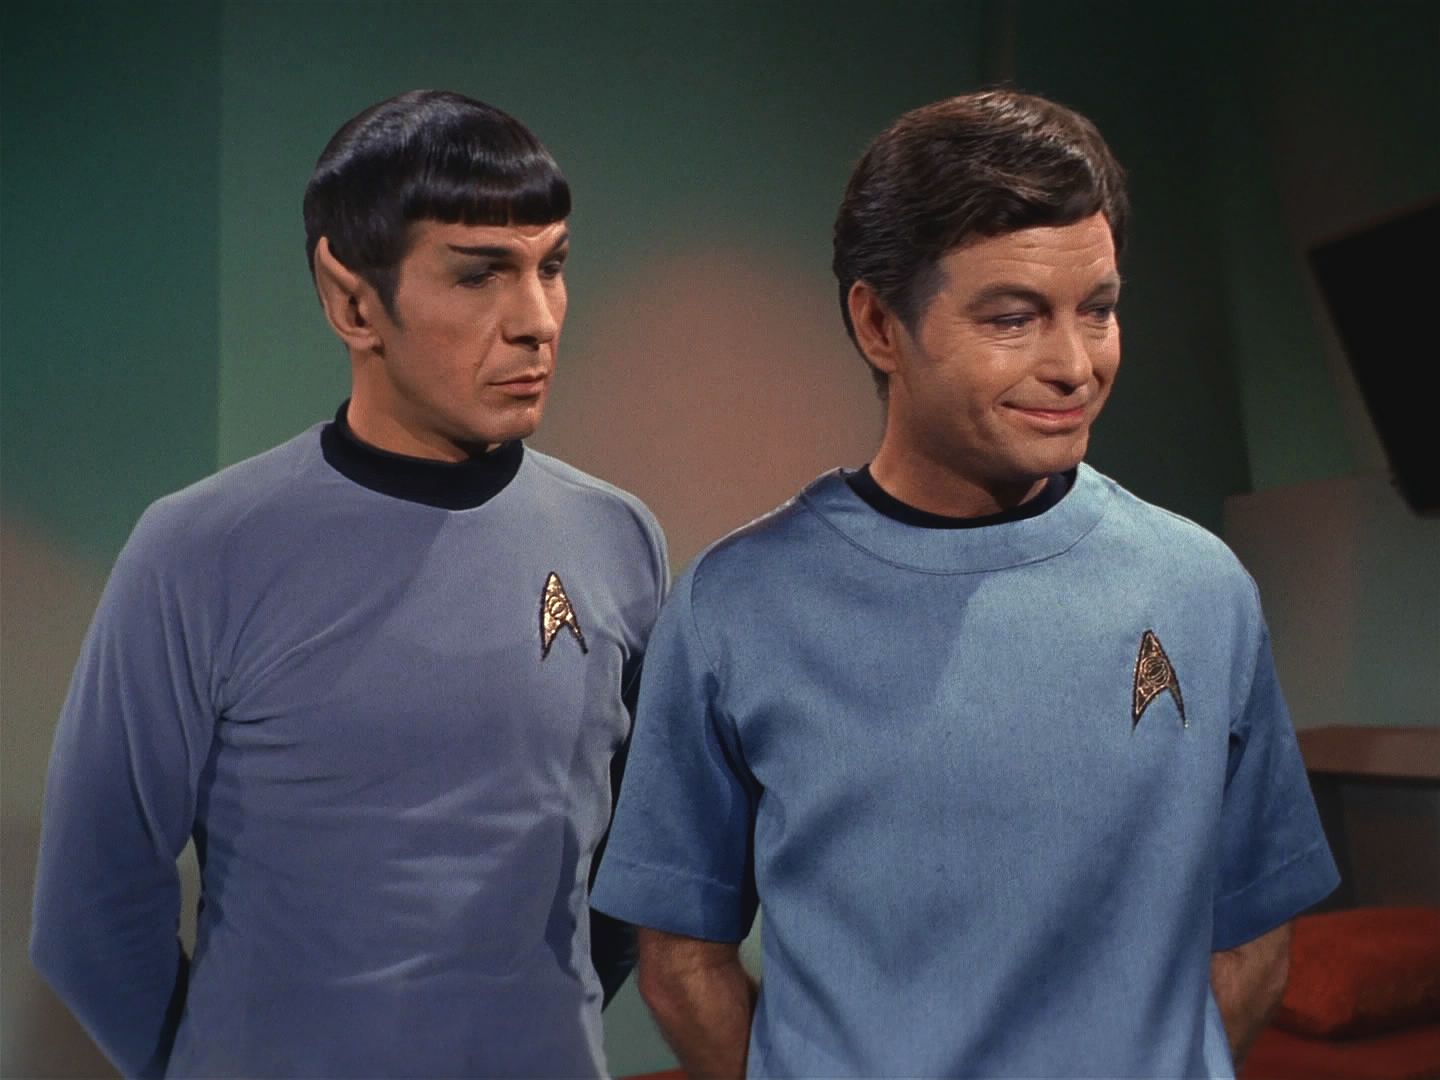 Když ho složili v transportní místnosti, sdělil mu Spock fakt, který přehlédl. Jeho ještě nenarozený syn sehraje významnou roli v lidském dobývání vesmíru, takže ho vrátit musí.